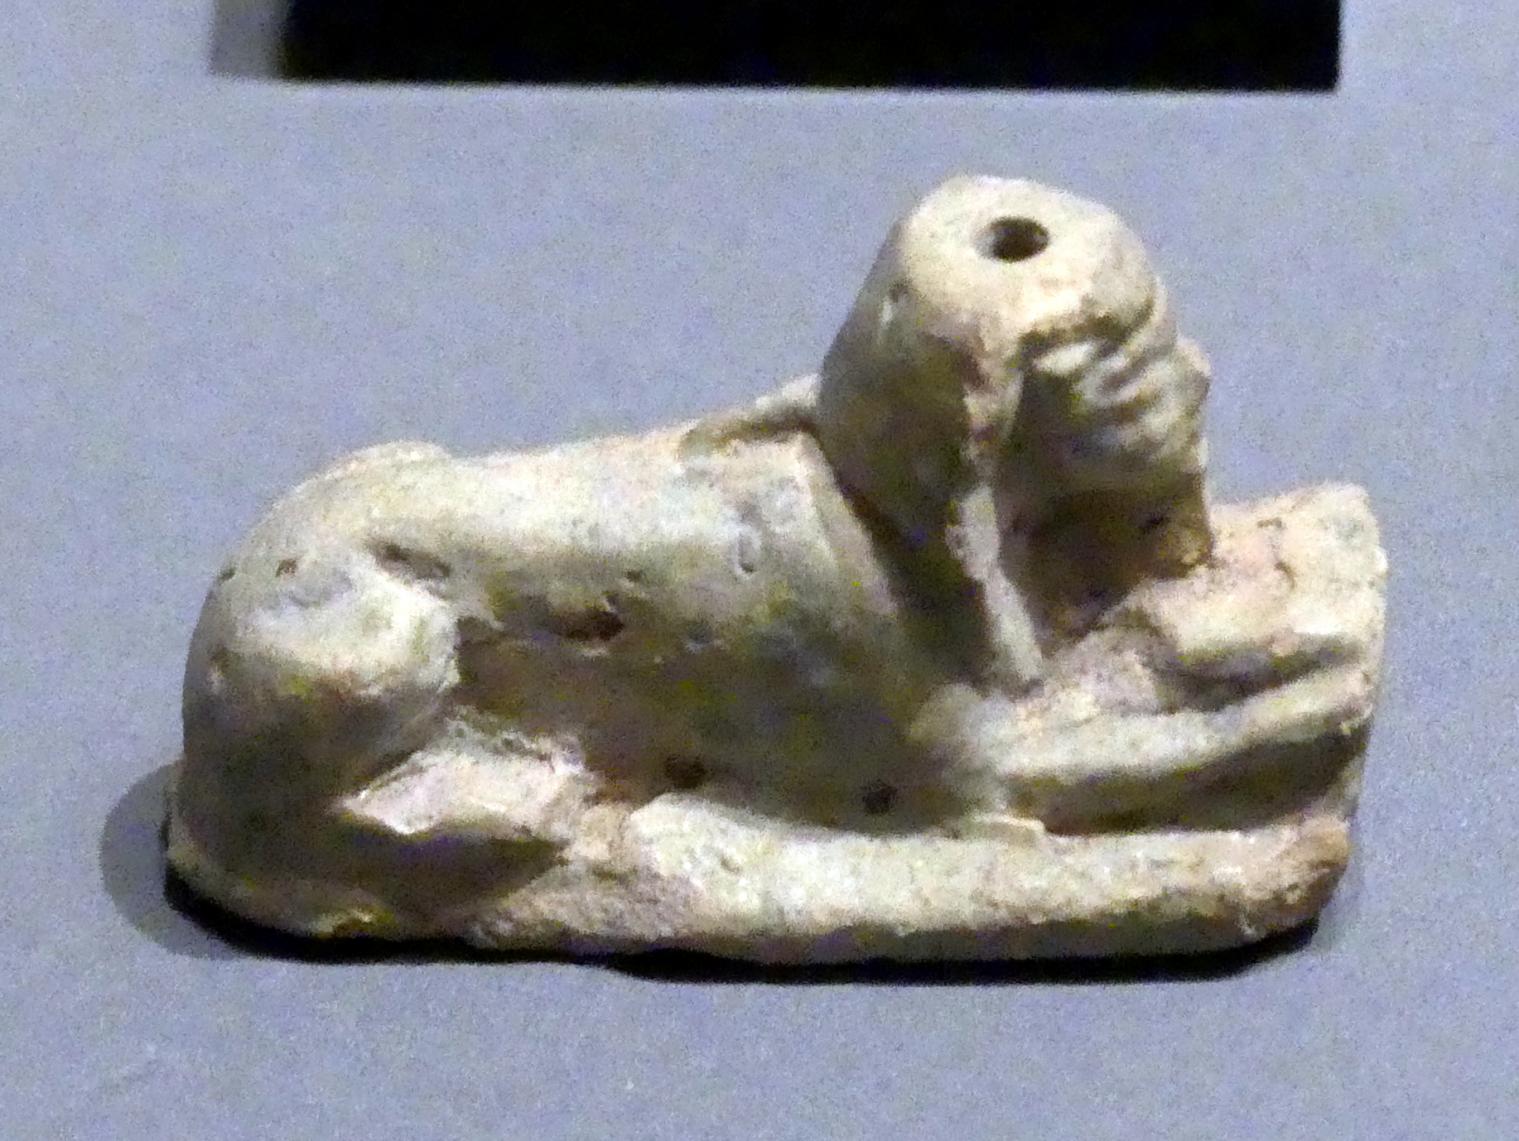 Sphinxfigur mit menschlichen Armen, Erscheinungsform des Königs, 18. Dynastie, Undatiert, 1500 - 1450 v. Chr.